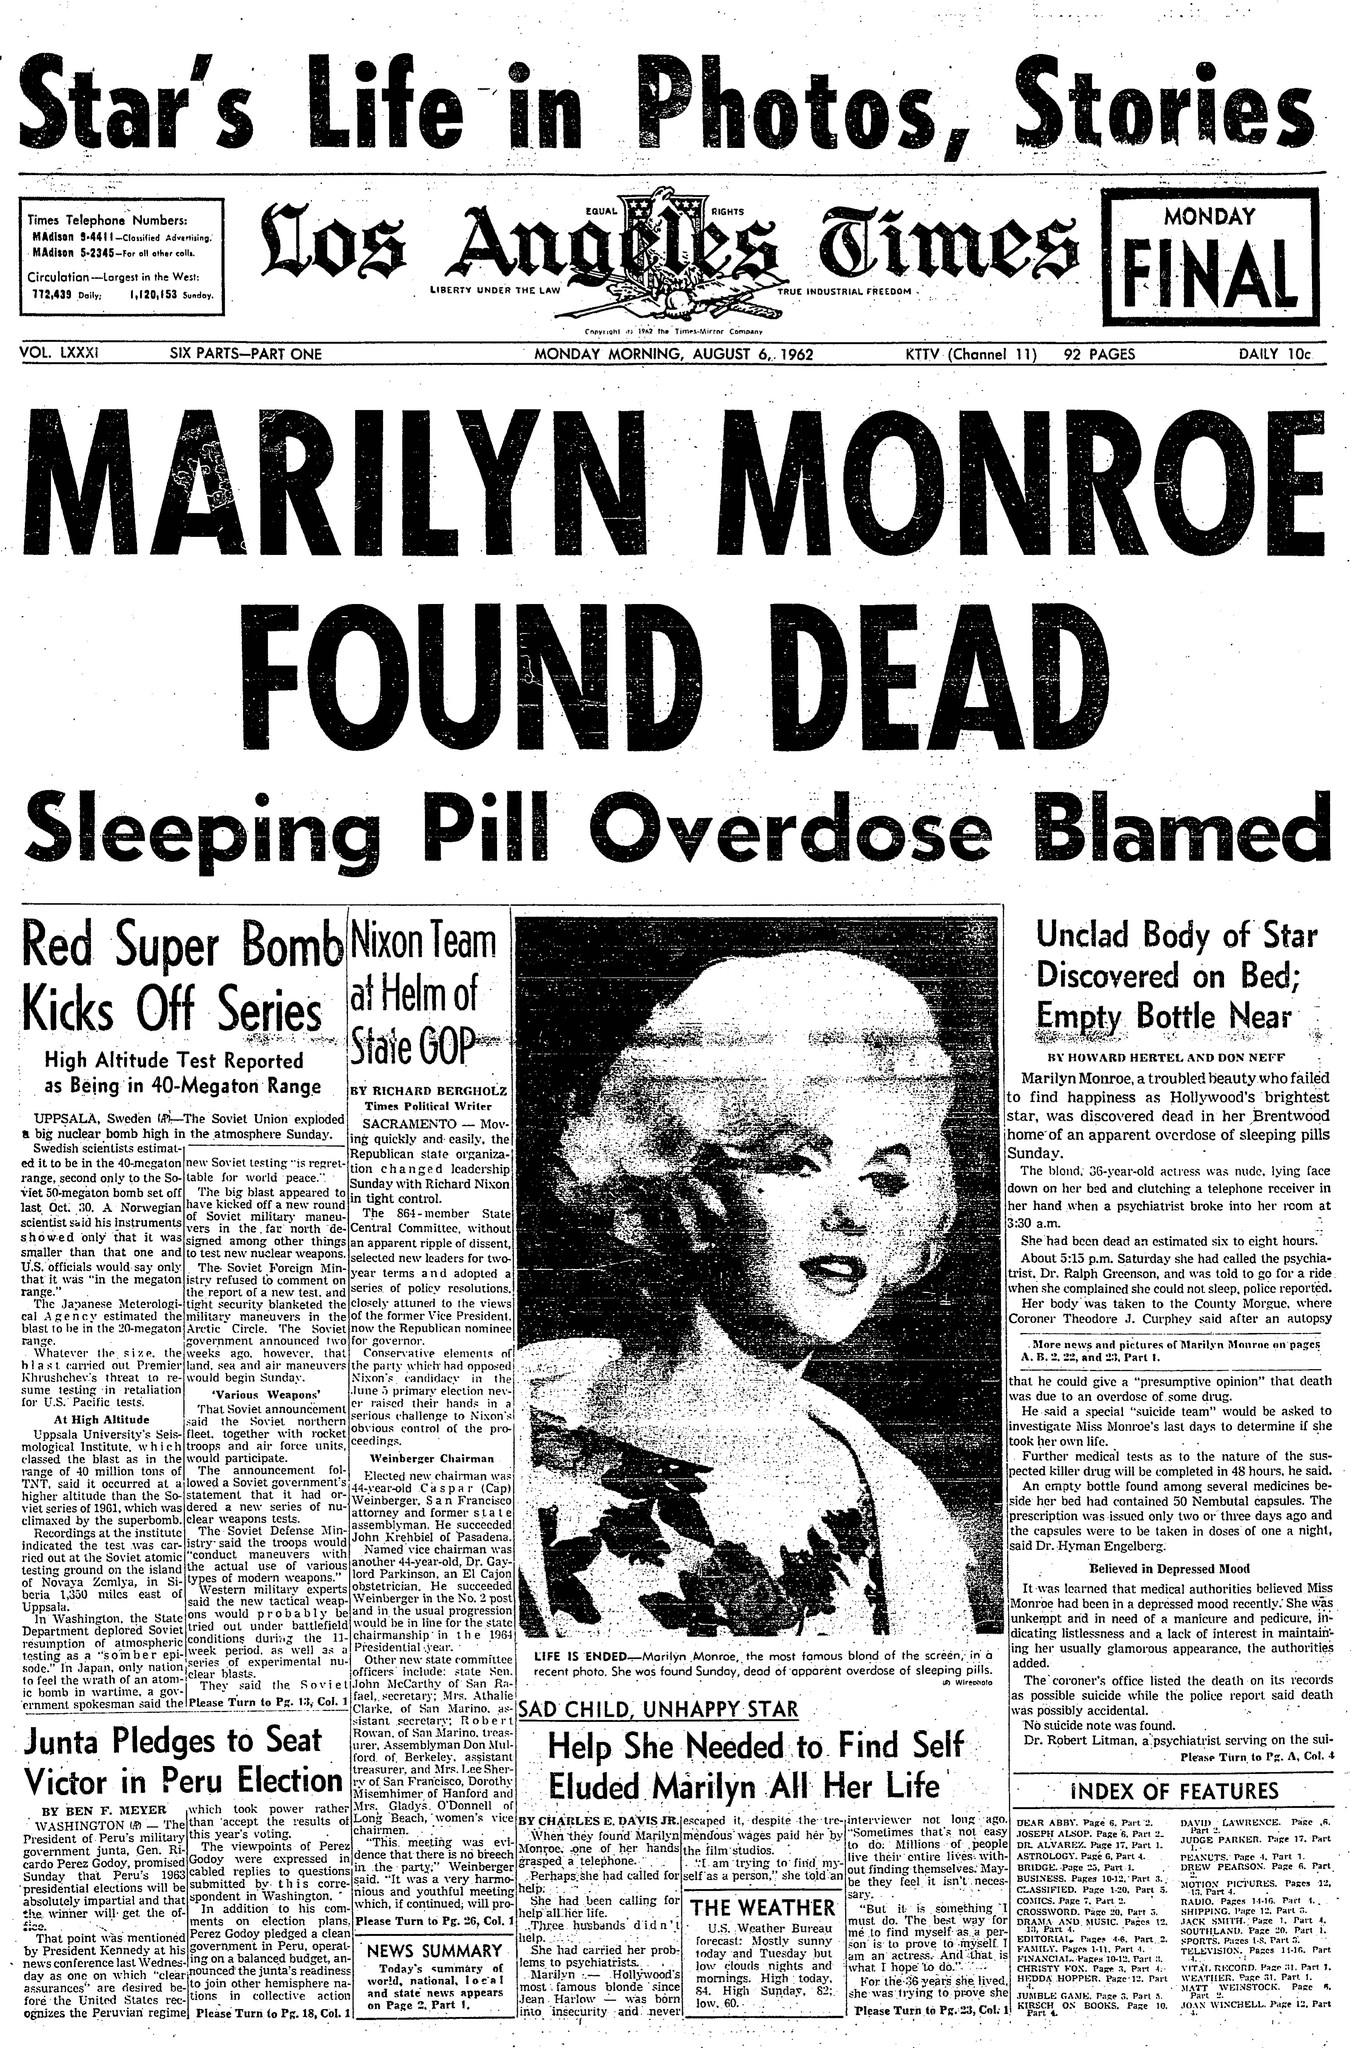 Portada del fallecimiento Marilyn Monroe del Los Angeles Times